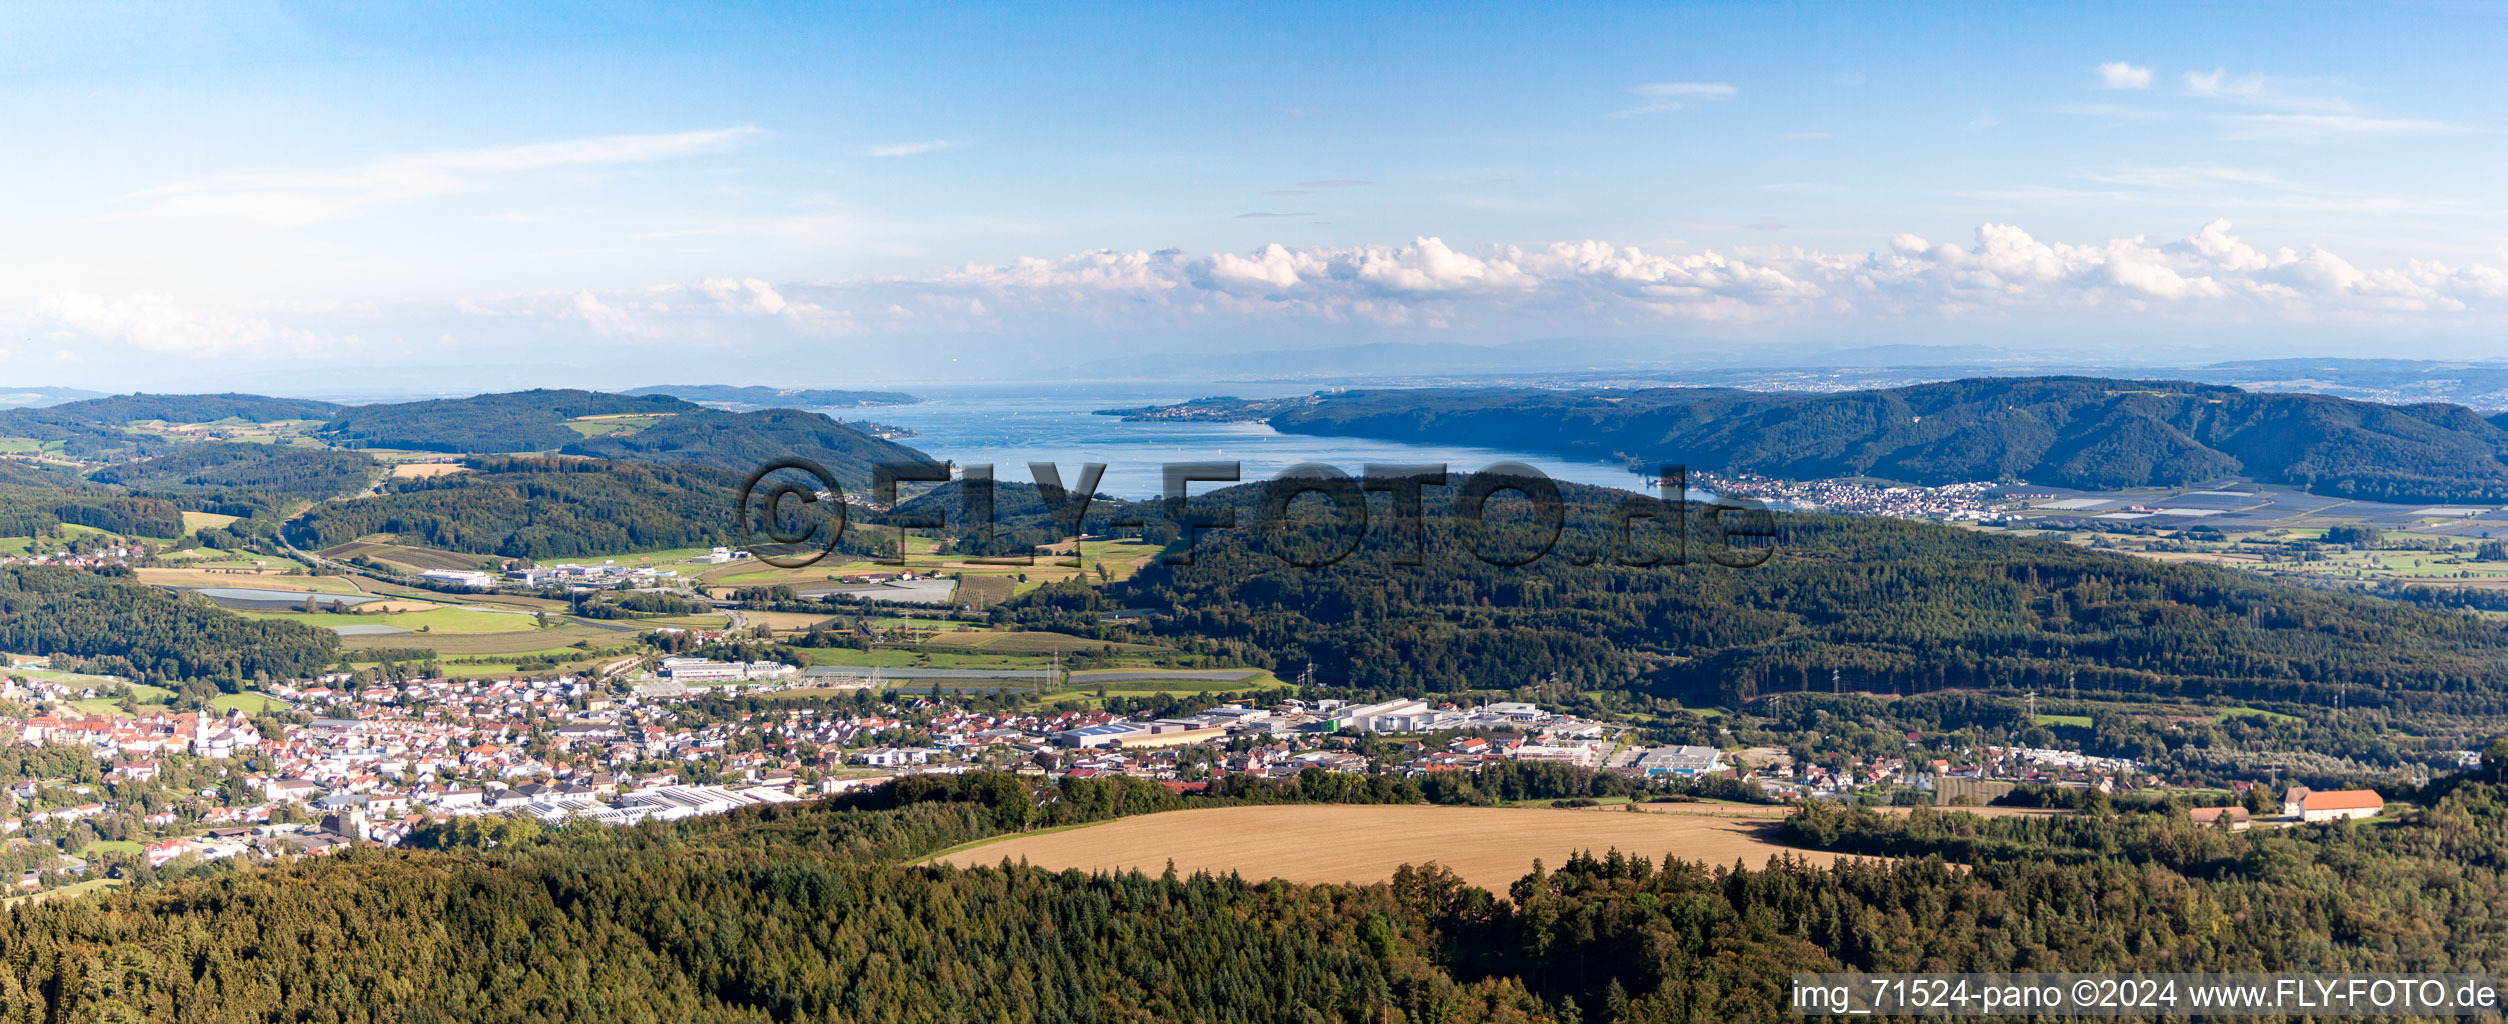 Vue aérienne de Rive du lac de Constance à Stockach dans le département Bade-Wurtemberg, Allemagne